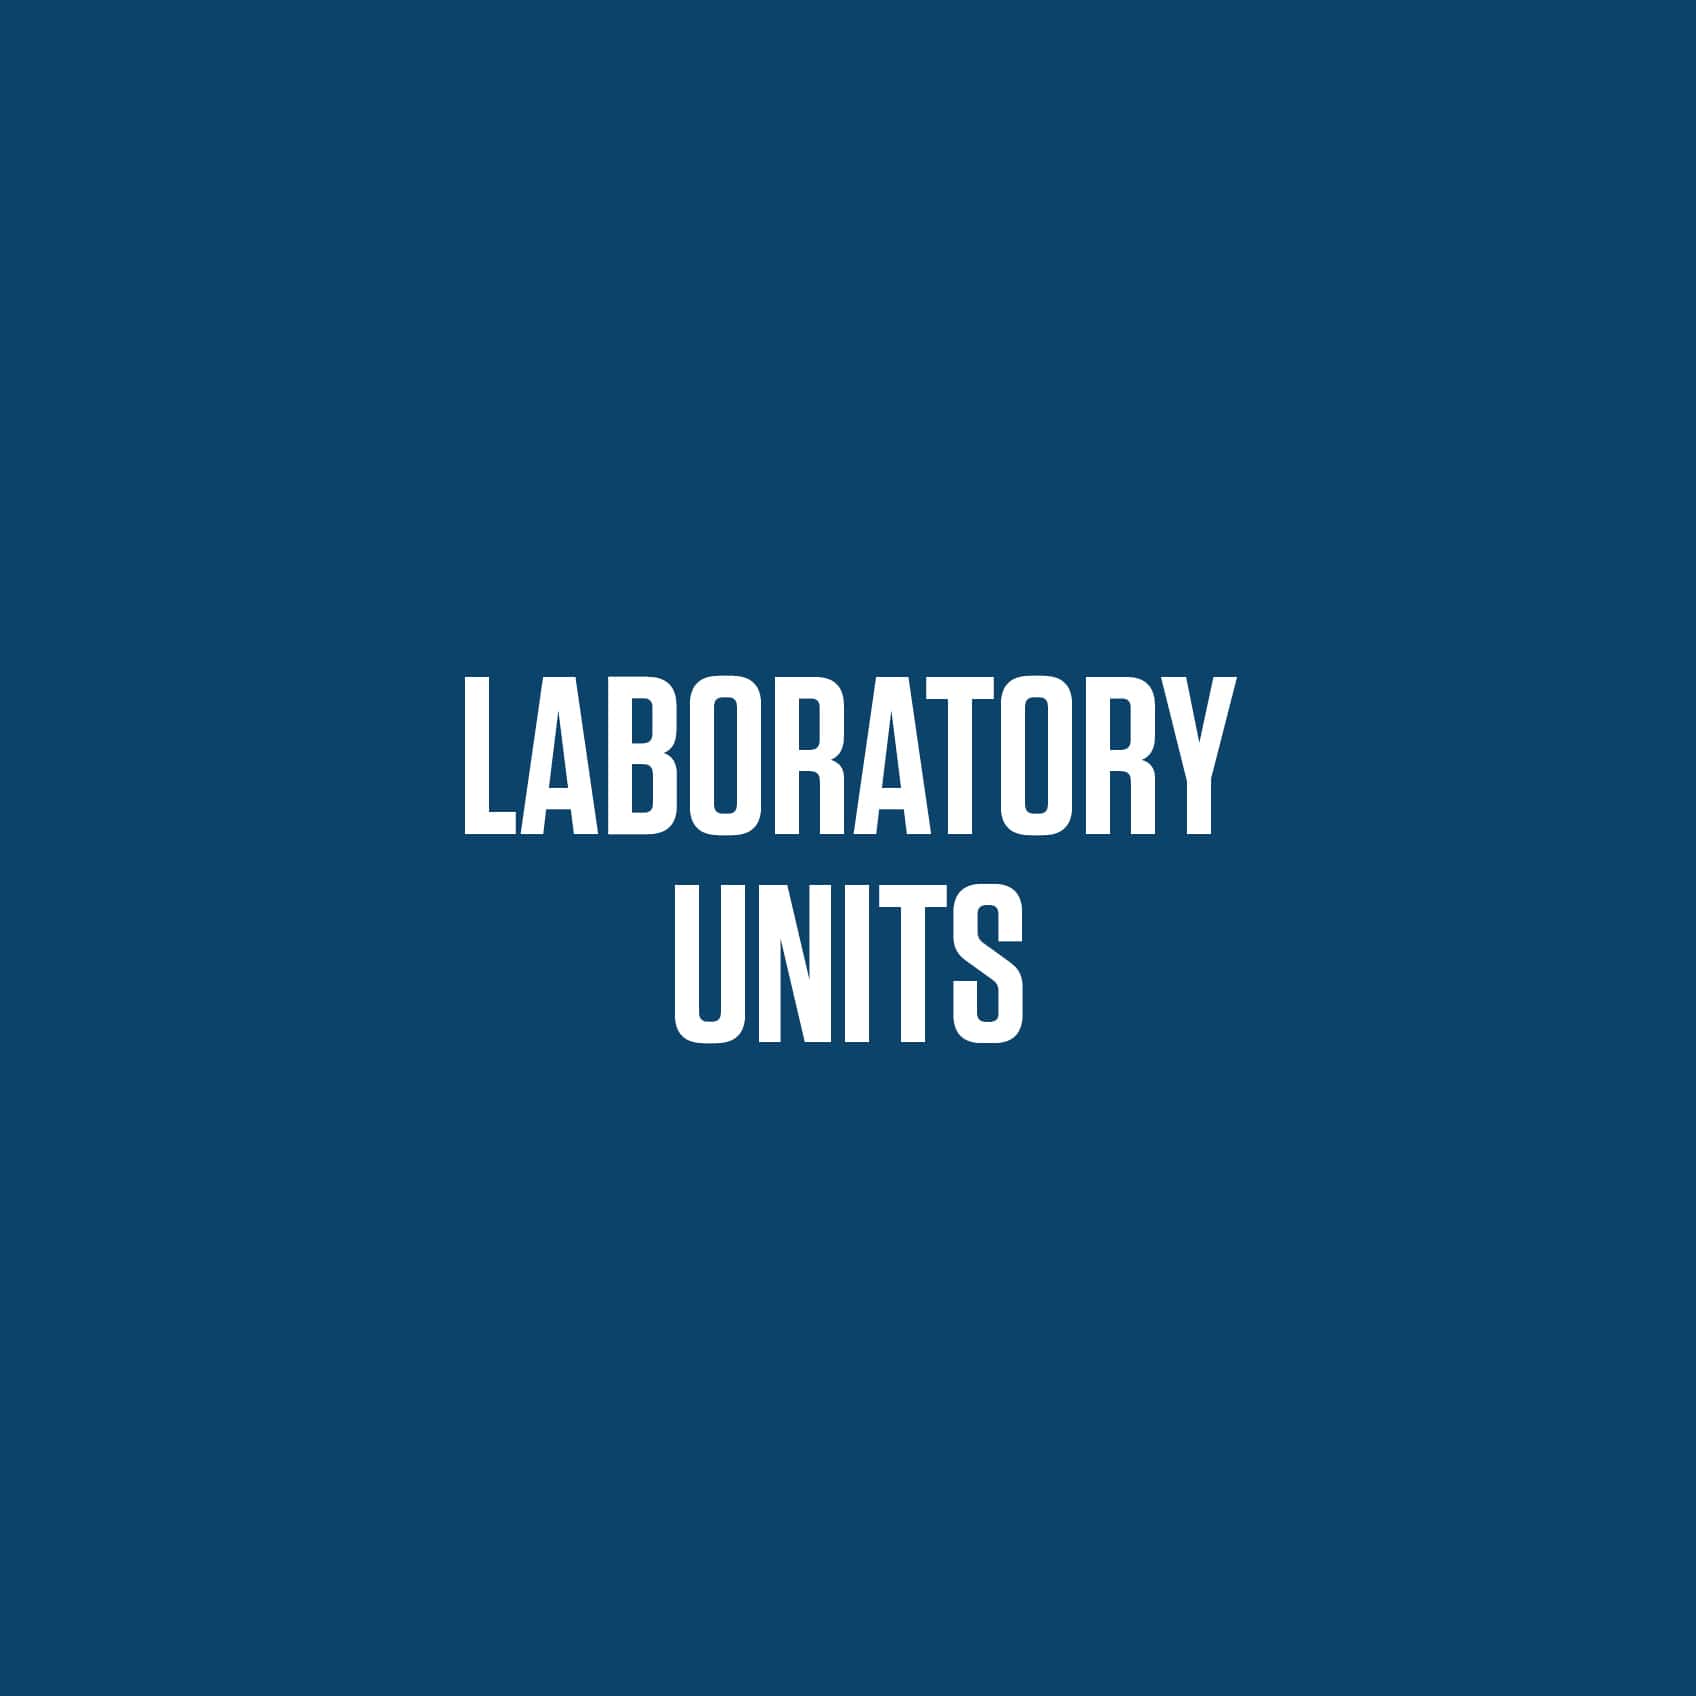 Laboratory Units